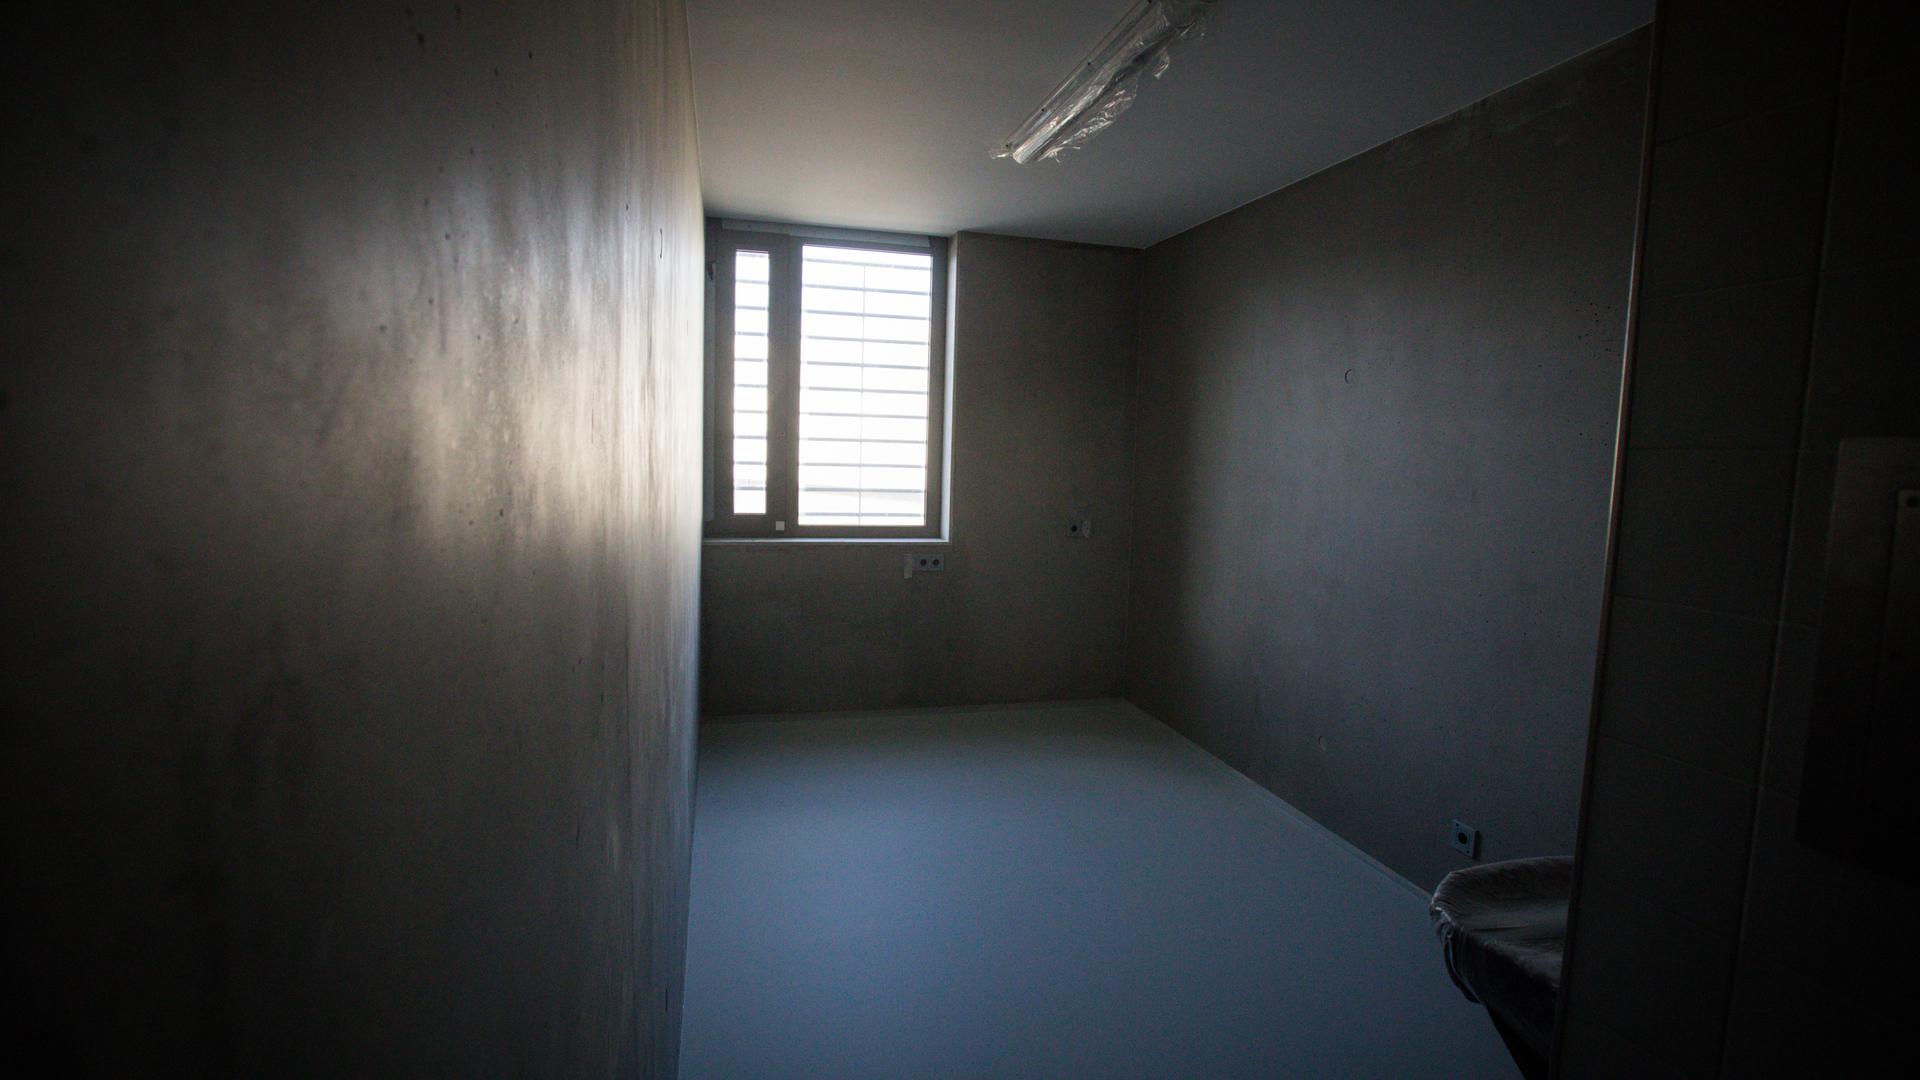 Douze détenus sont prévus par étage. Les cellules actuellement aménagées servent de test.